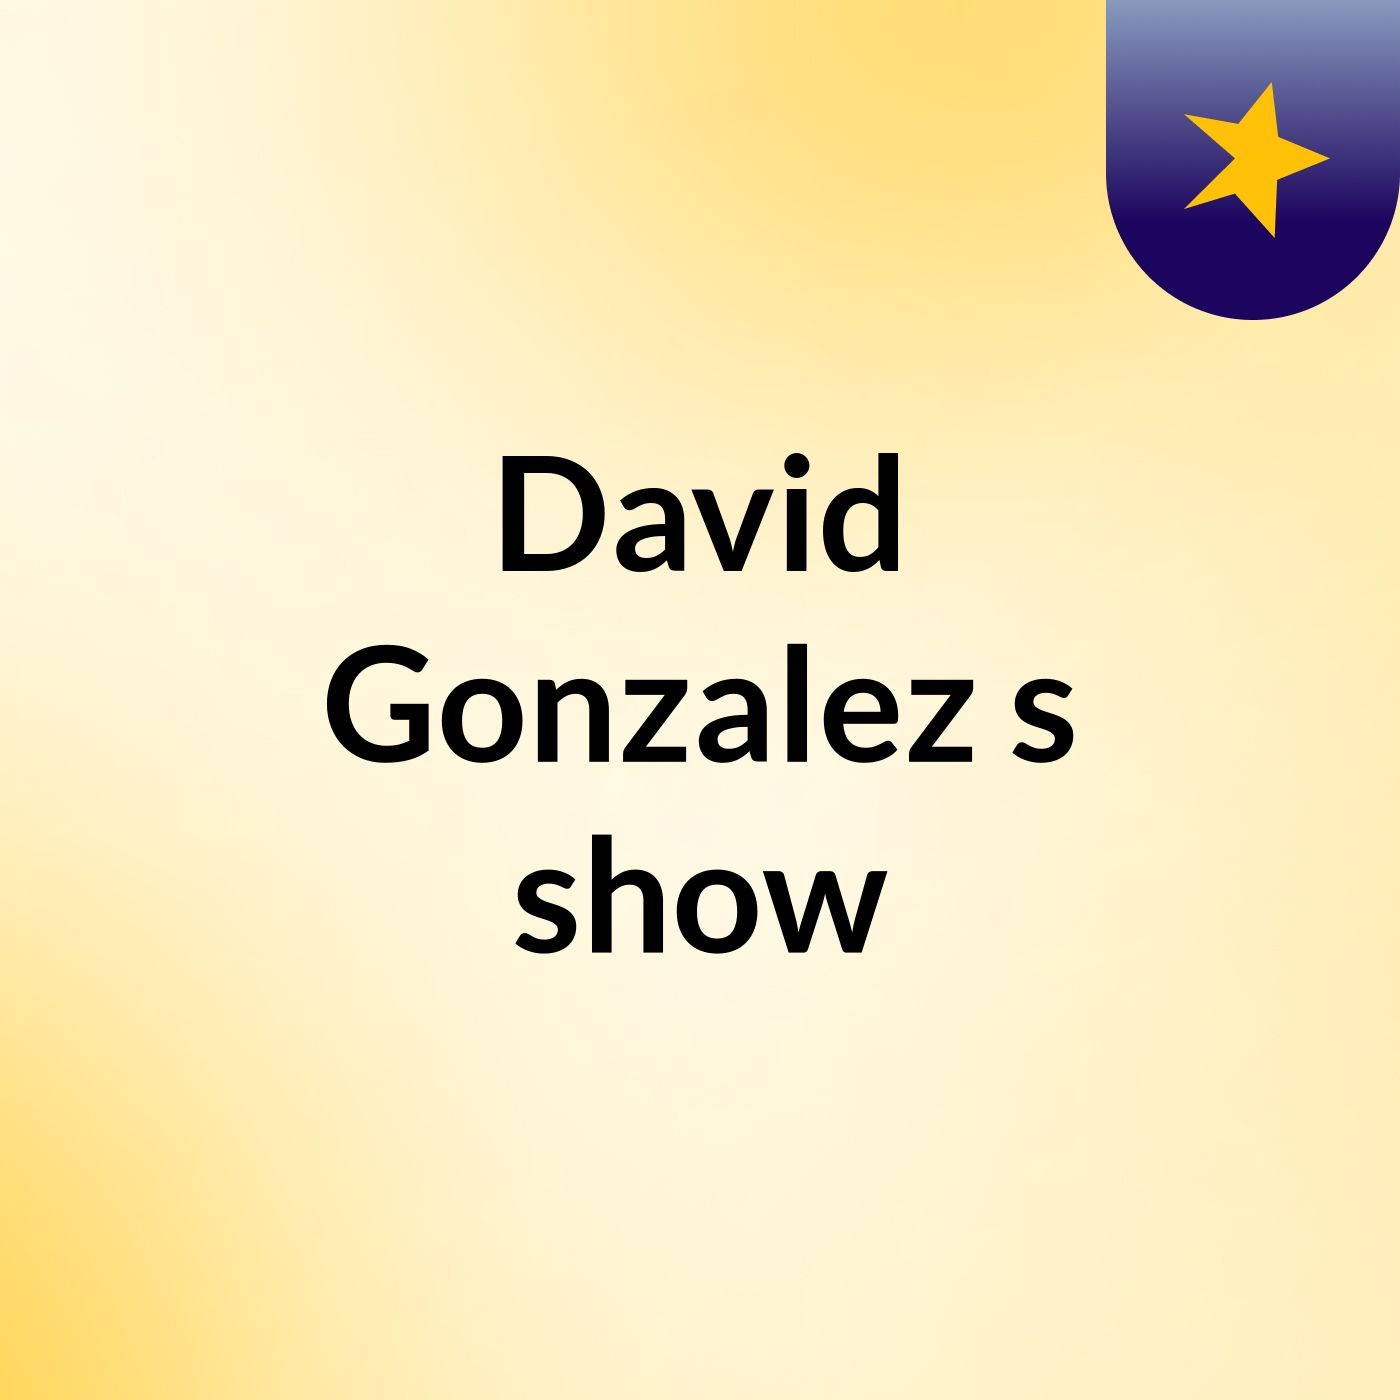 David Gonzalez's show